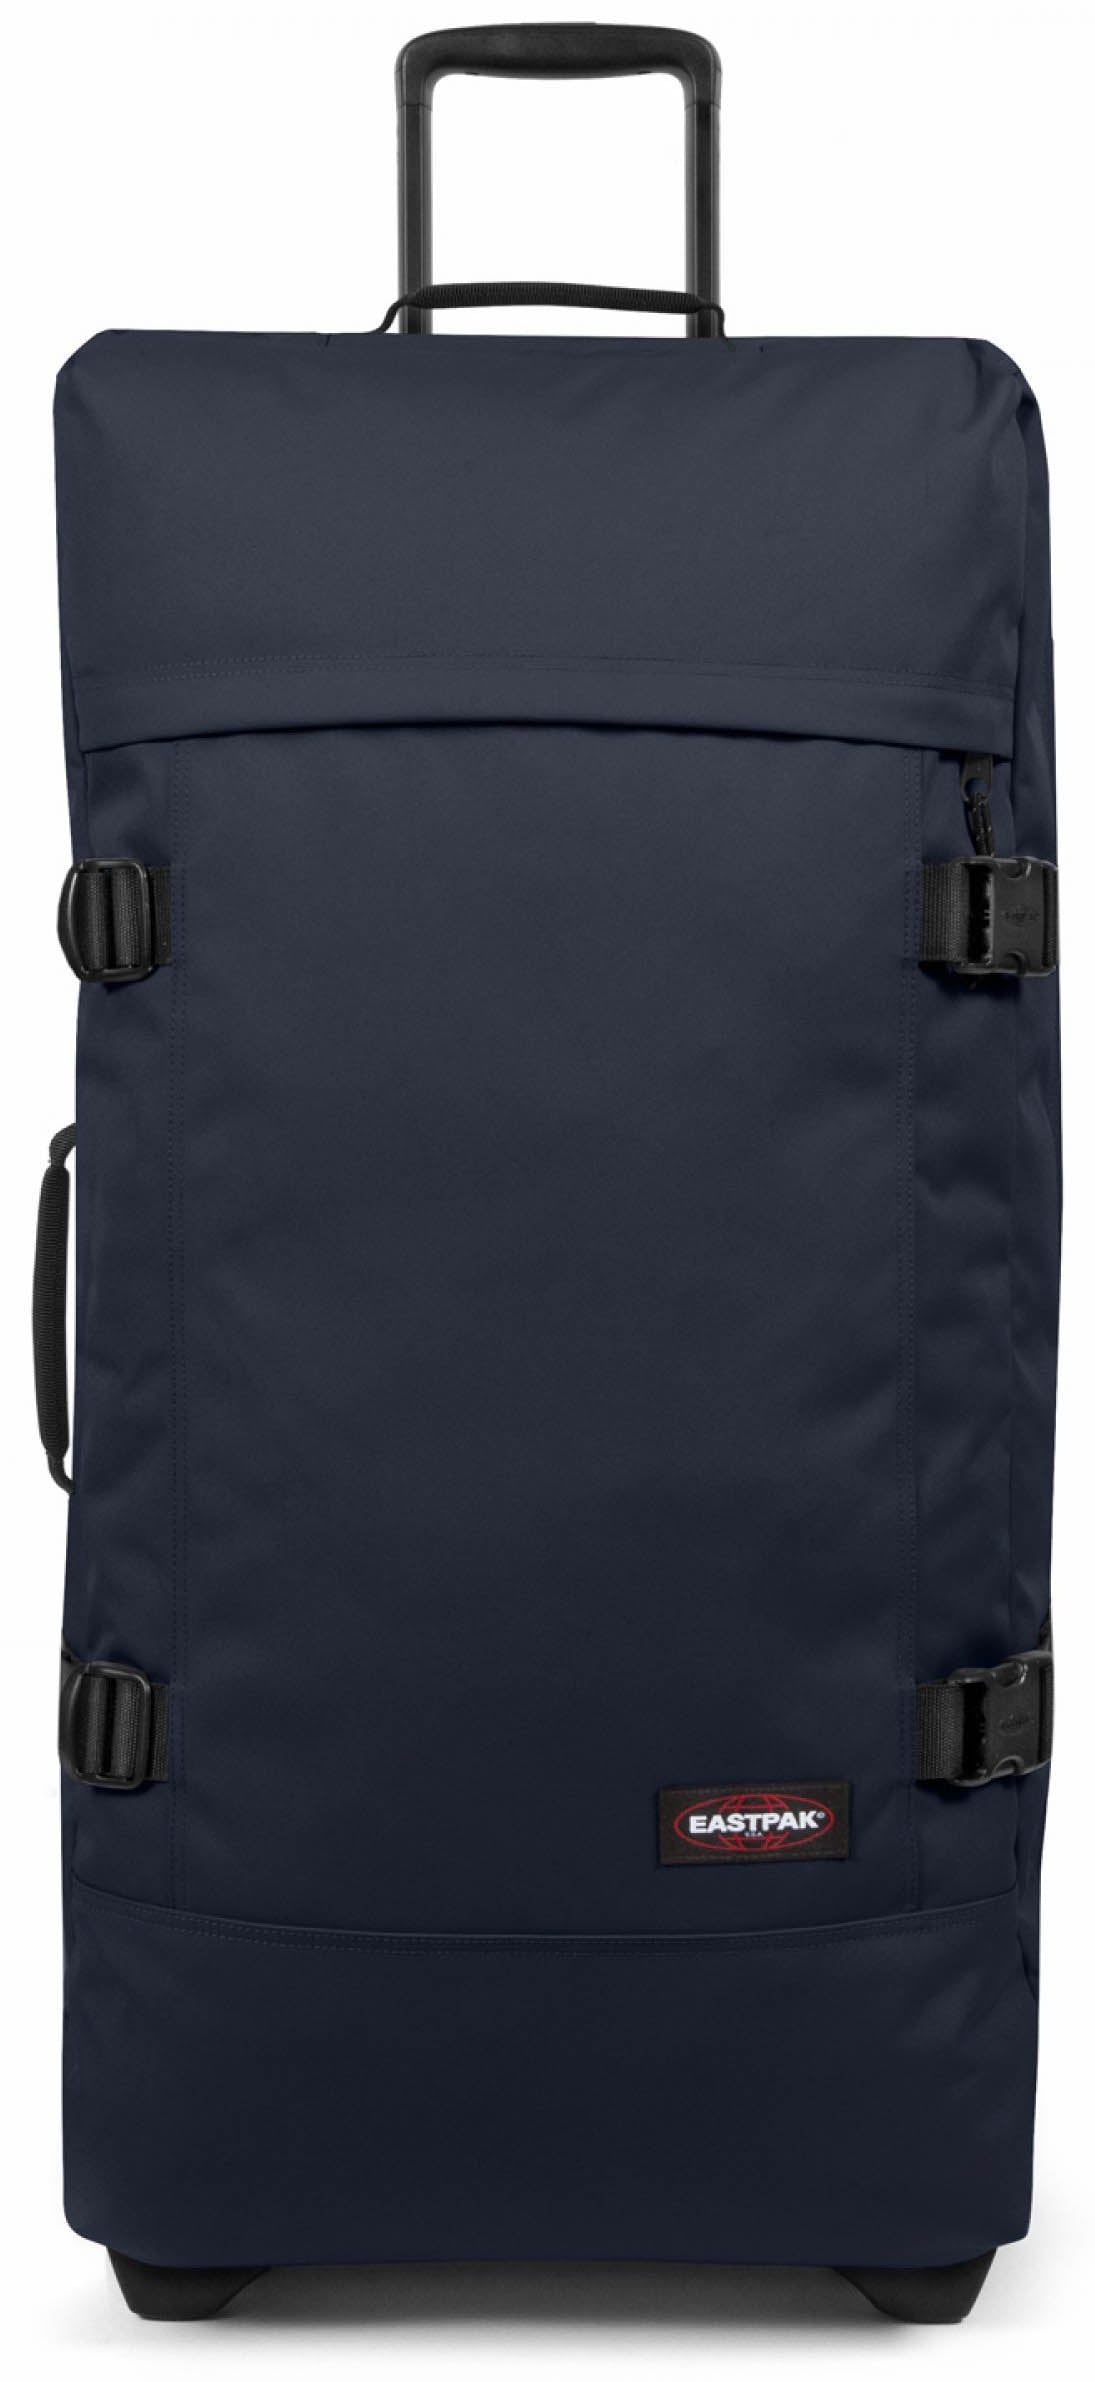 dwaas Leerling Productie Eastpak Tranverz L Suitcase - Black – thebackpacker